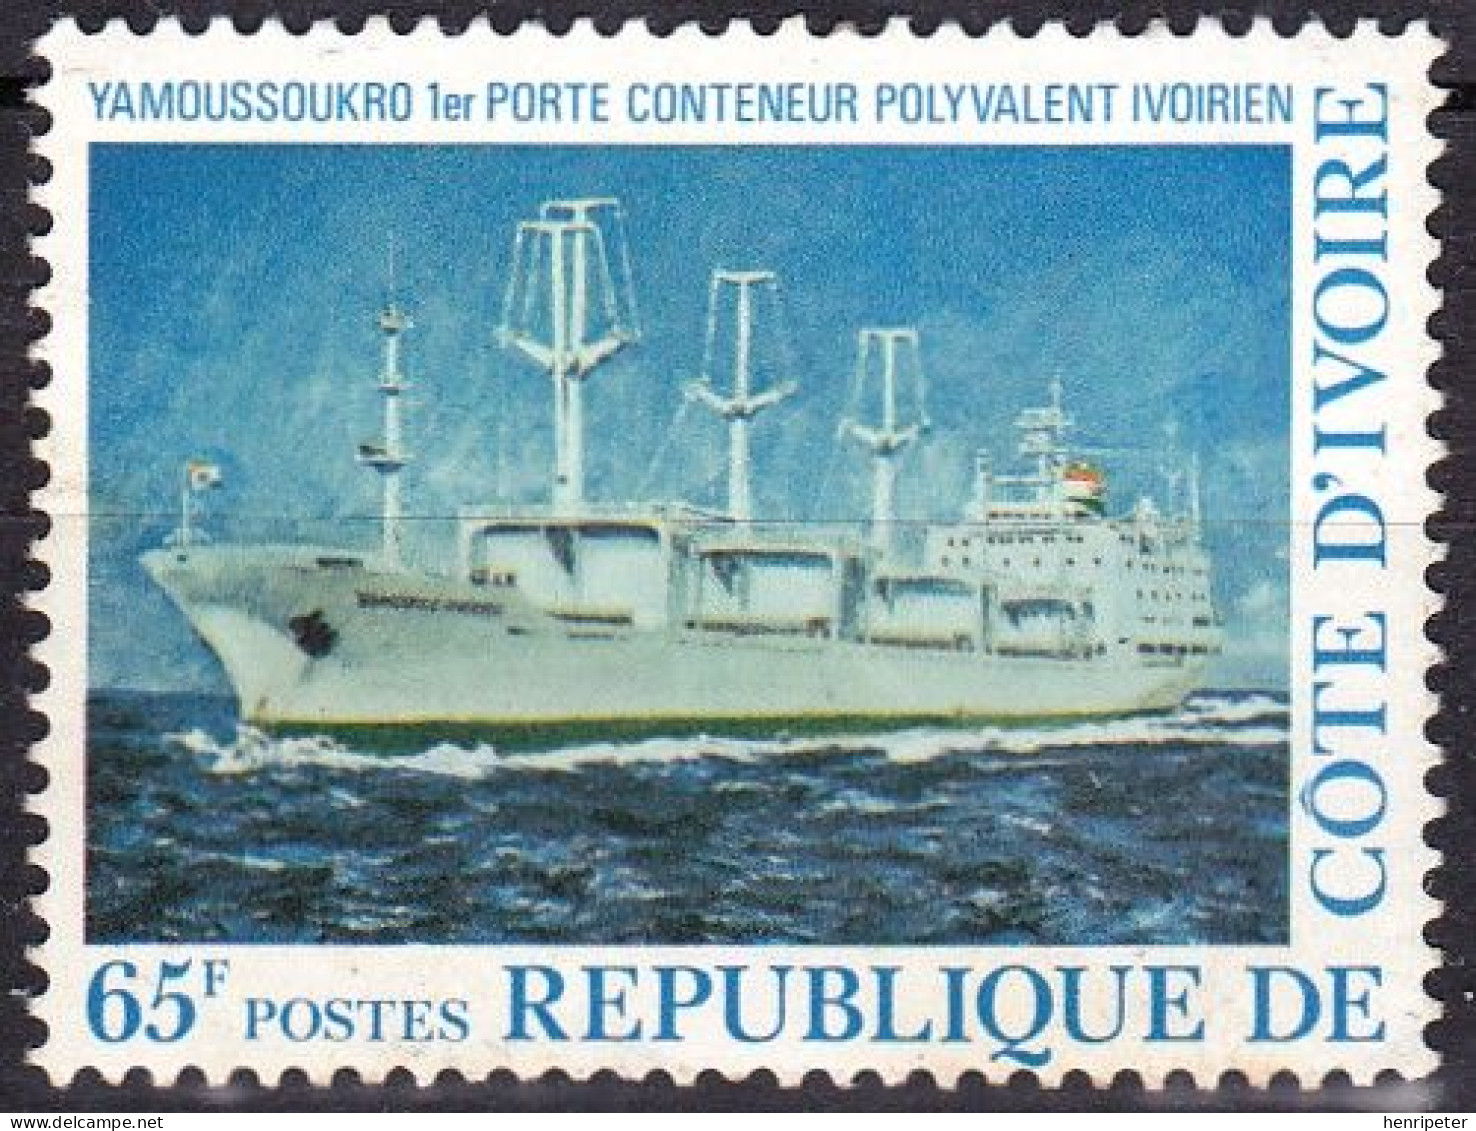 Timbre-poste Gommé Dentelé Neuf - YAMOUSSOUKRO Premier Porte-conteneur Ivoirien - N° 456 (Yvert Et Tellier) - RCI 1977 - Côte D'Ivoire (1960-...)